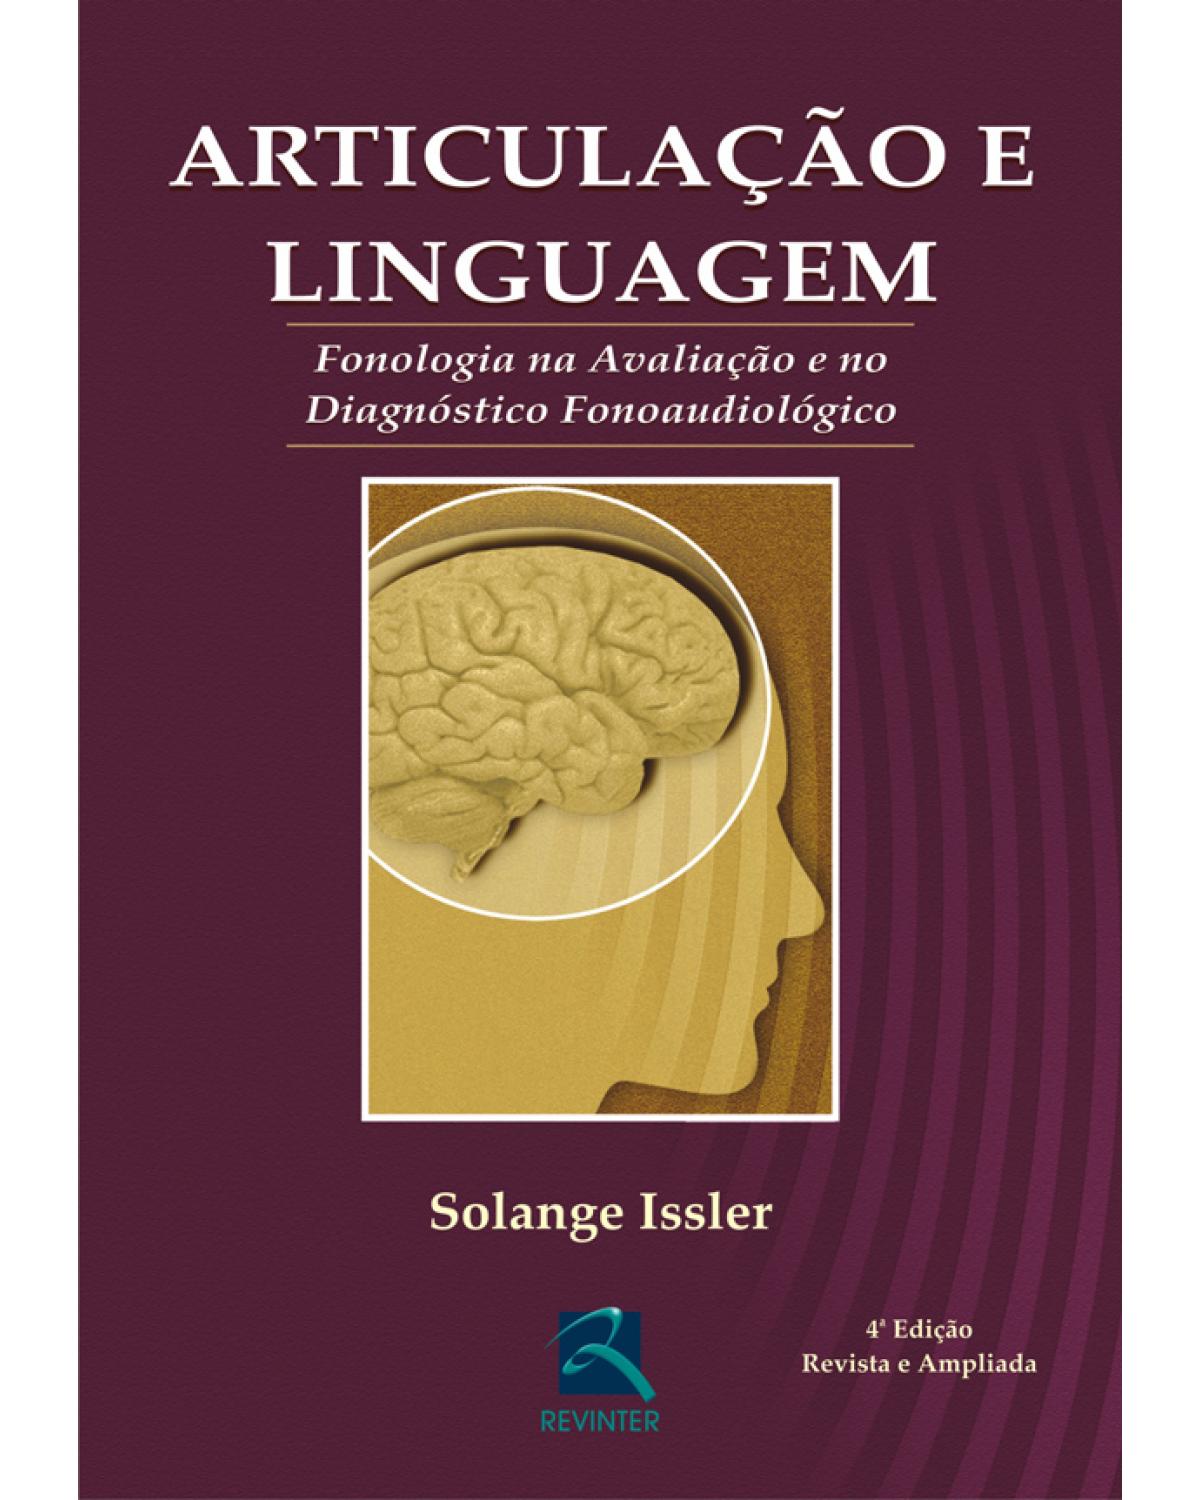 Articulação e linguagem - fonologia na avaliação e no diagnóstico fonoaudiólogo - 4ª Edição | 2005